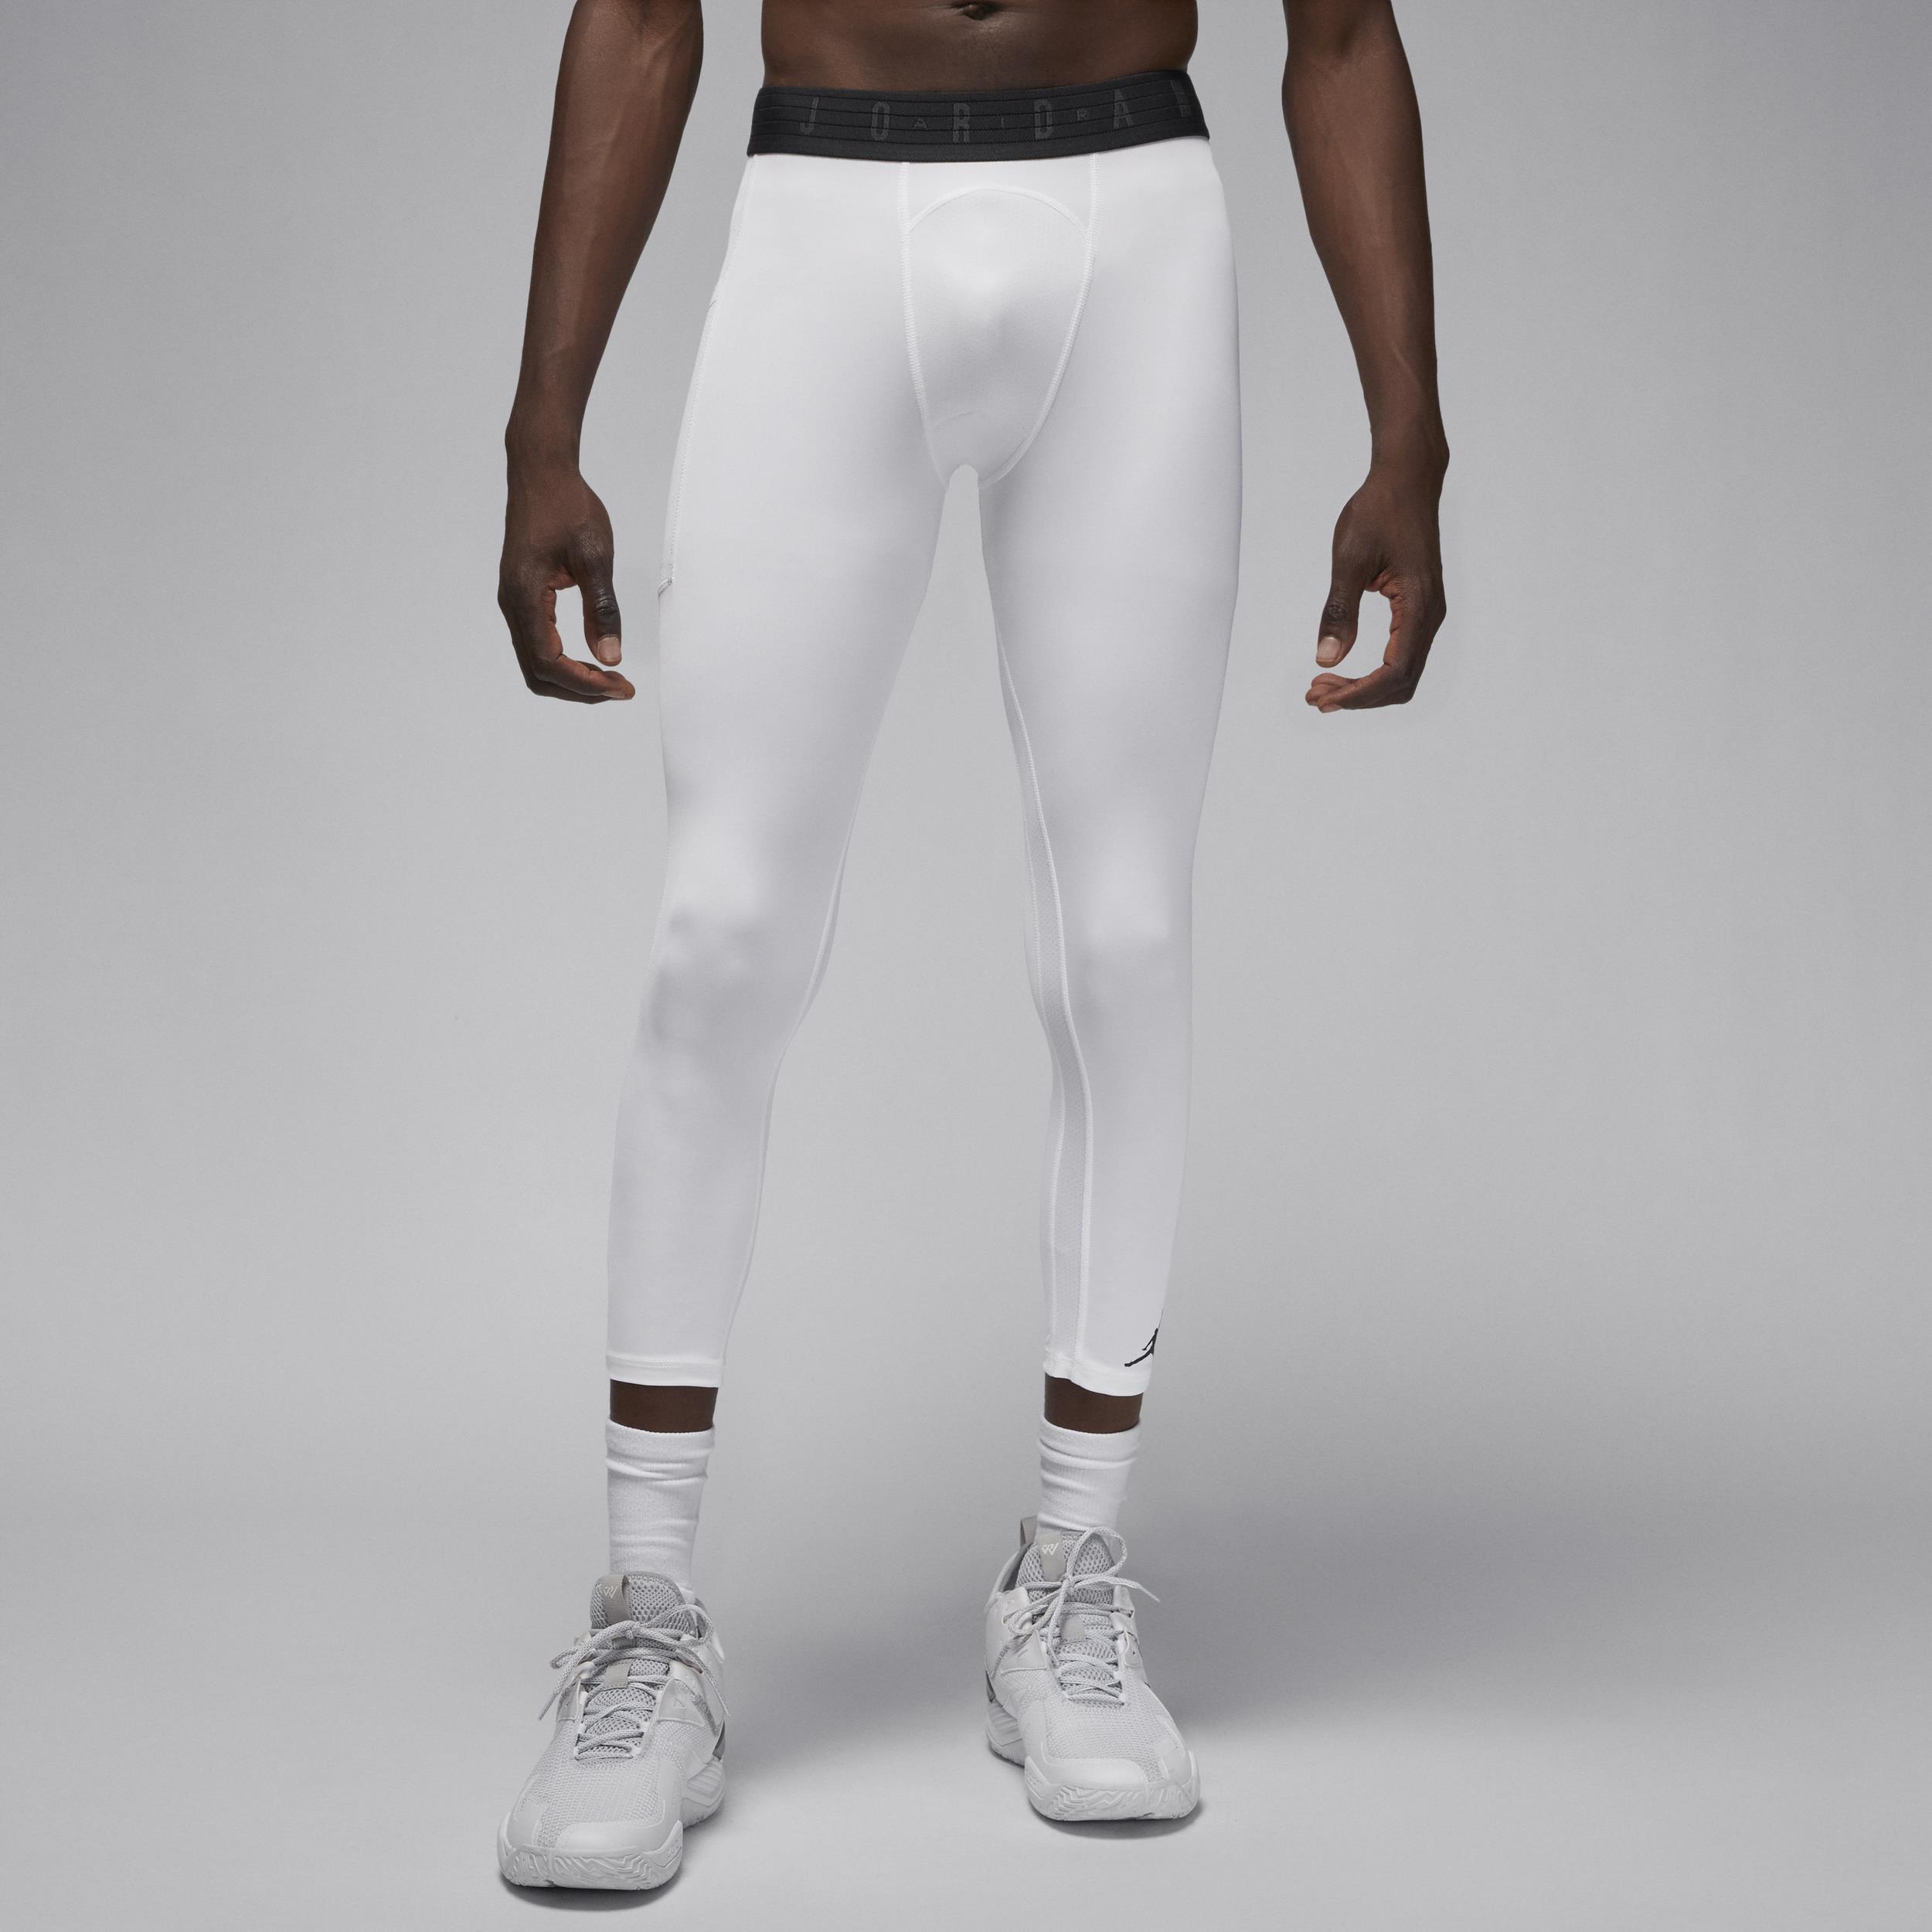 Nike Jordan Sport Dri-FIT Men's 3/4 Tights - White